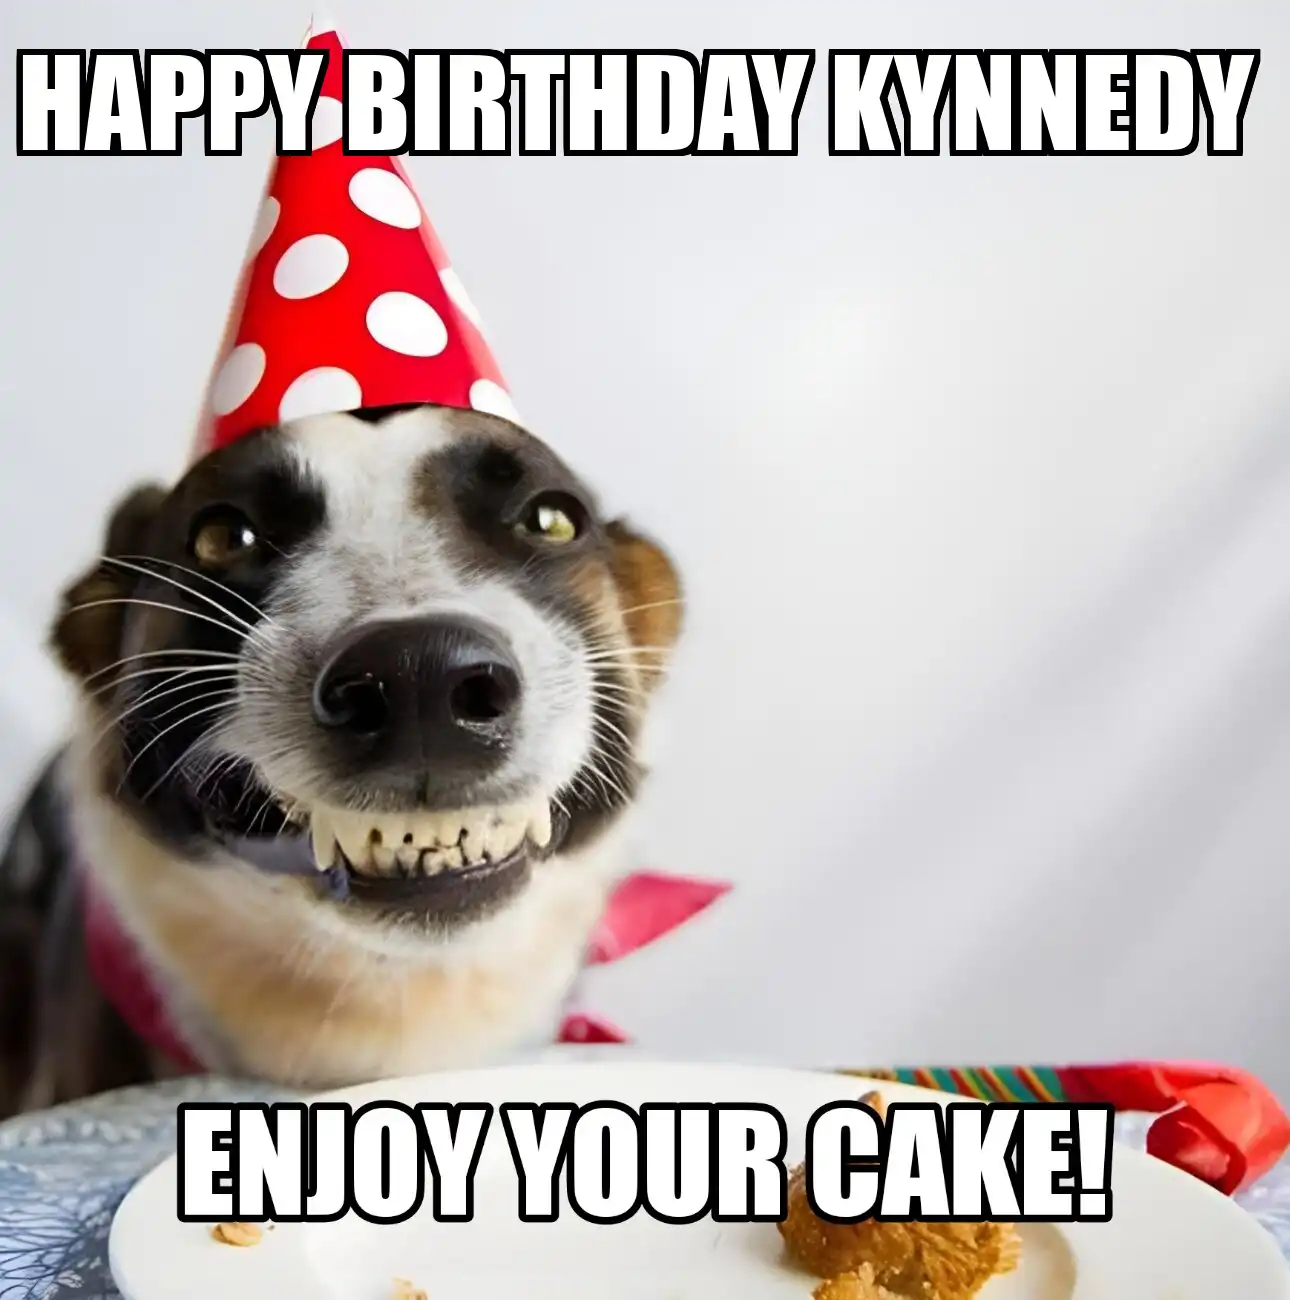 Happy Birthday Kynnedy Enjoy Your Cake Dog Meme